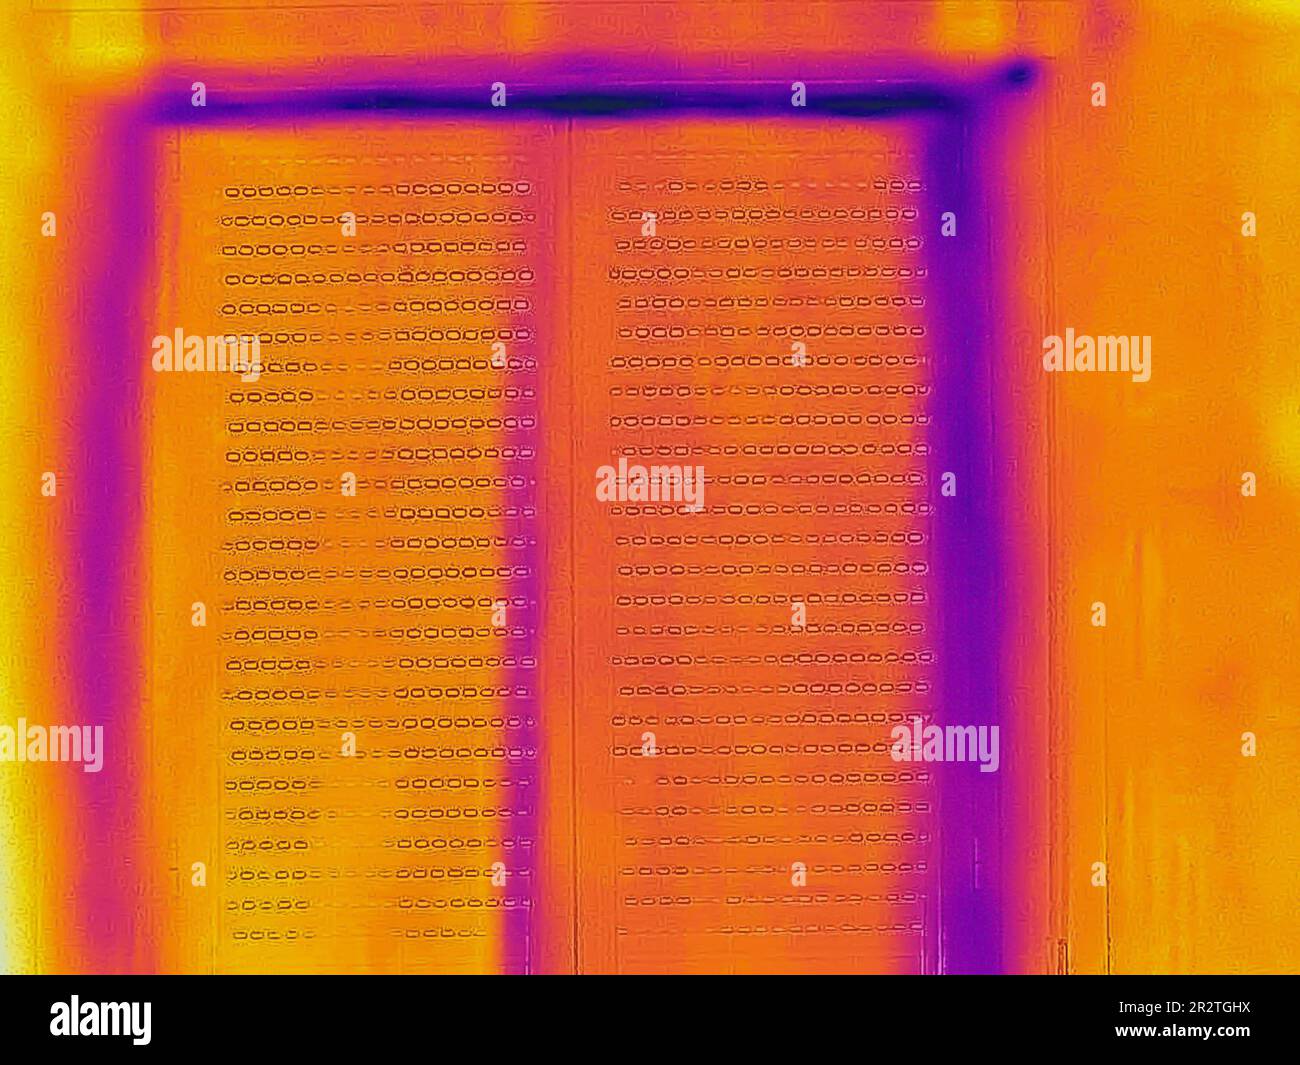 Ein Wärmebild eines mit einer Infrarot-Wärmebildkamera aufgenommenen Hausfensters, das verschiedene Temperaturen anzeigt. Wärmedämmung und Luftdichtigkeit Stockfoto